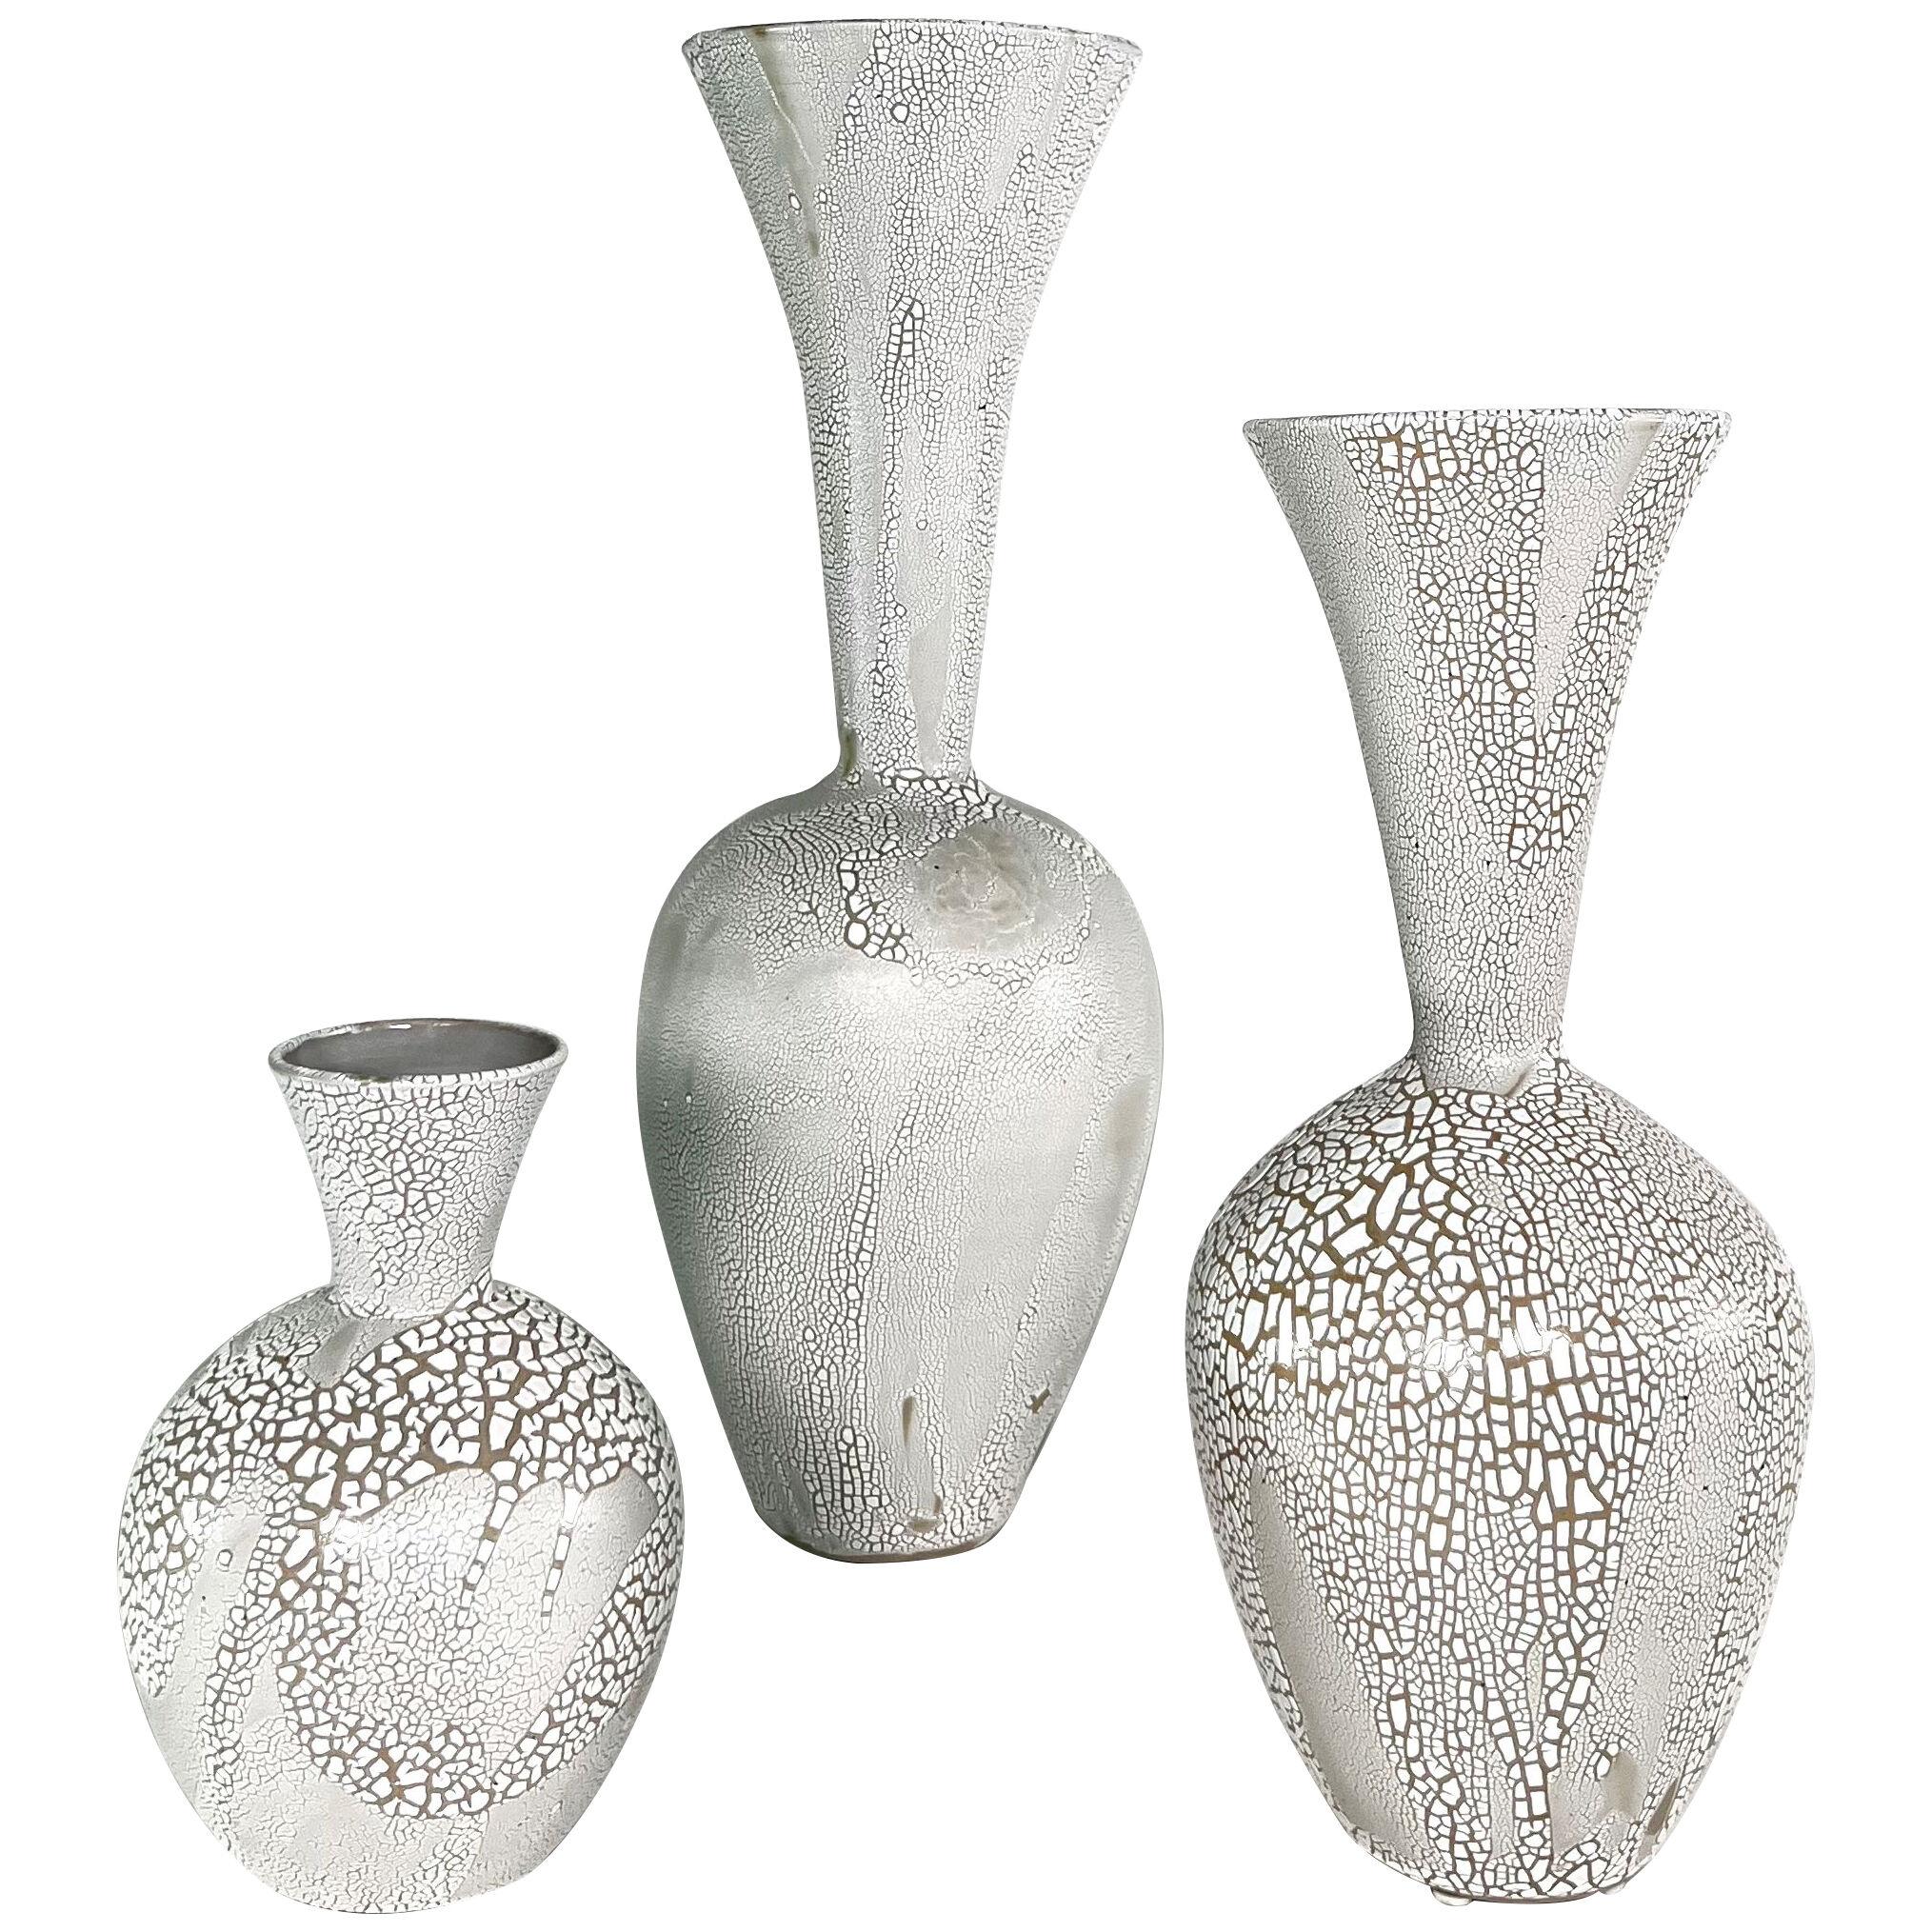 A Group of 3 White Mottled Glazed Ceramic Vessels, Daric Harvie